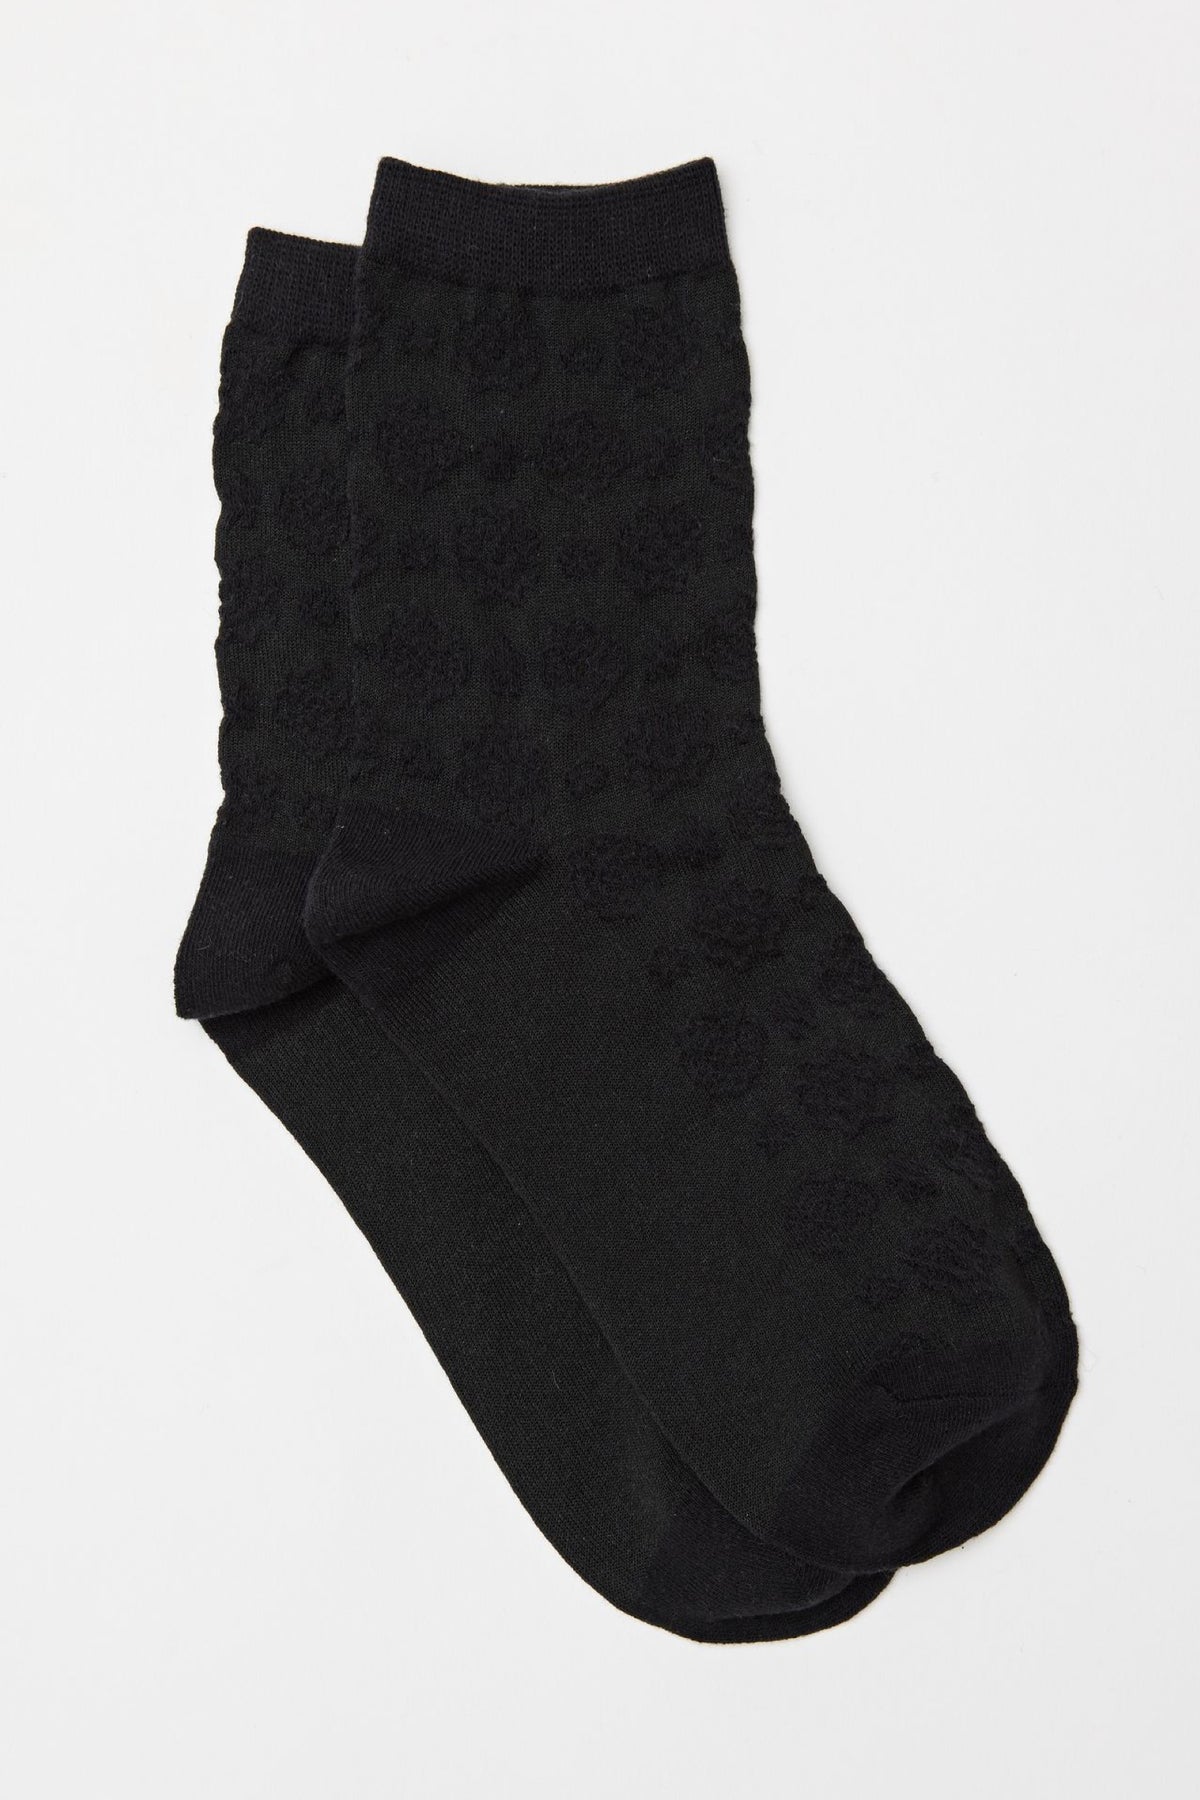 Black Textured Socks